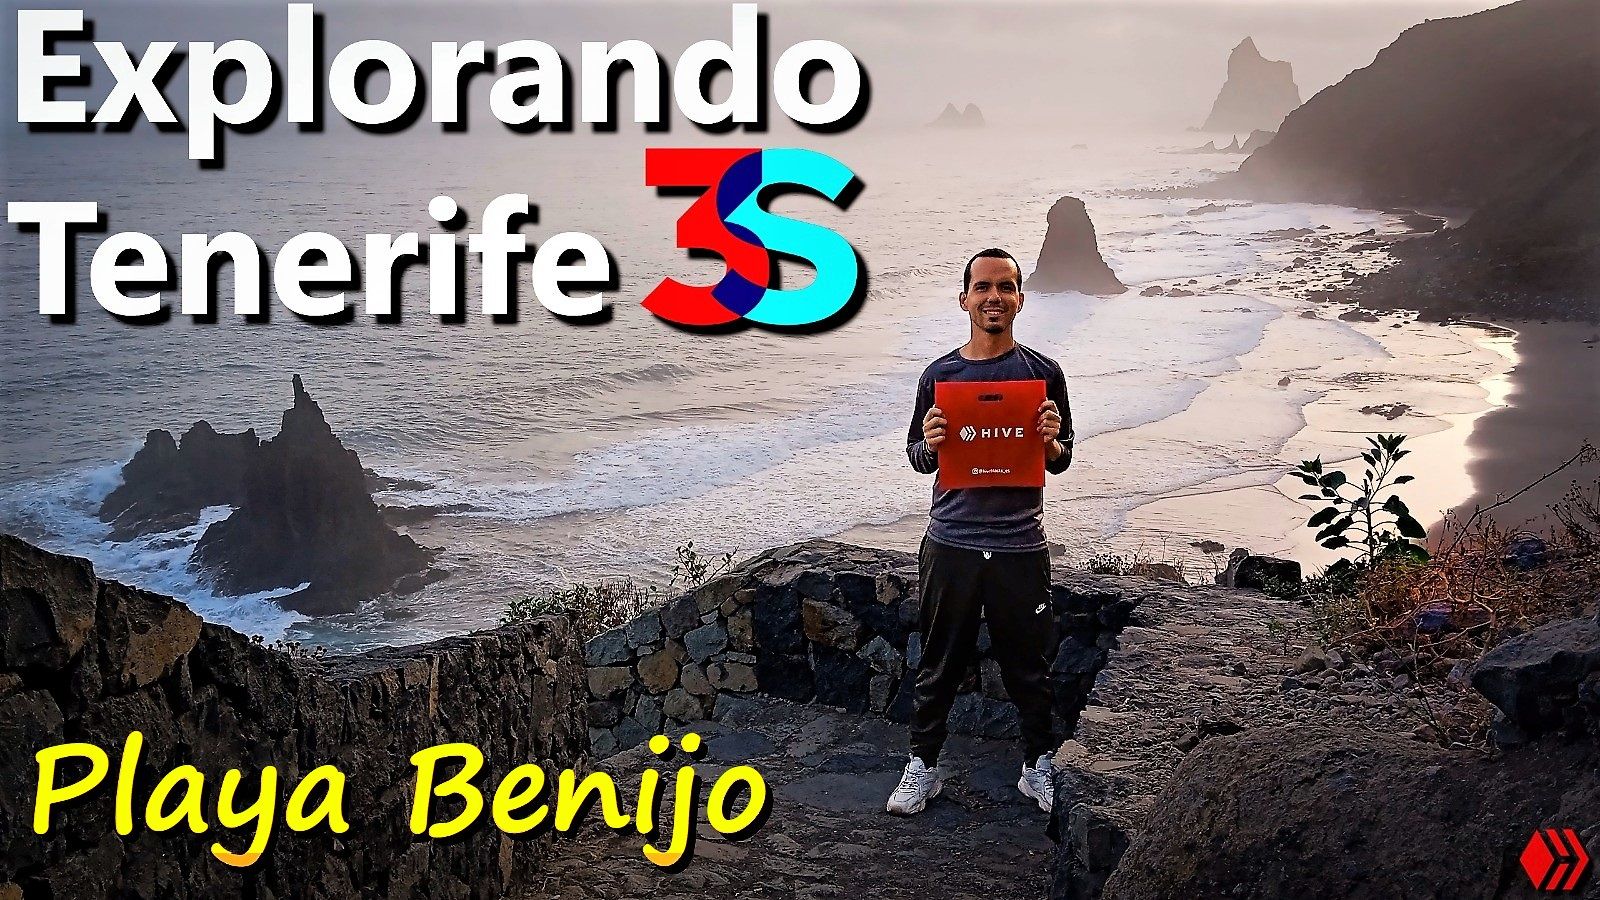 Explorando Tenerife Aventura en la impresionante y remota Playa Benijo Hive 3Speak EspaVlog.jpeg